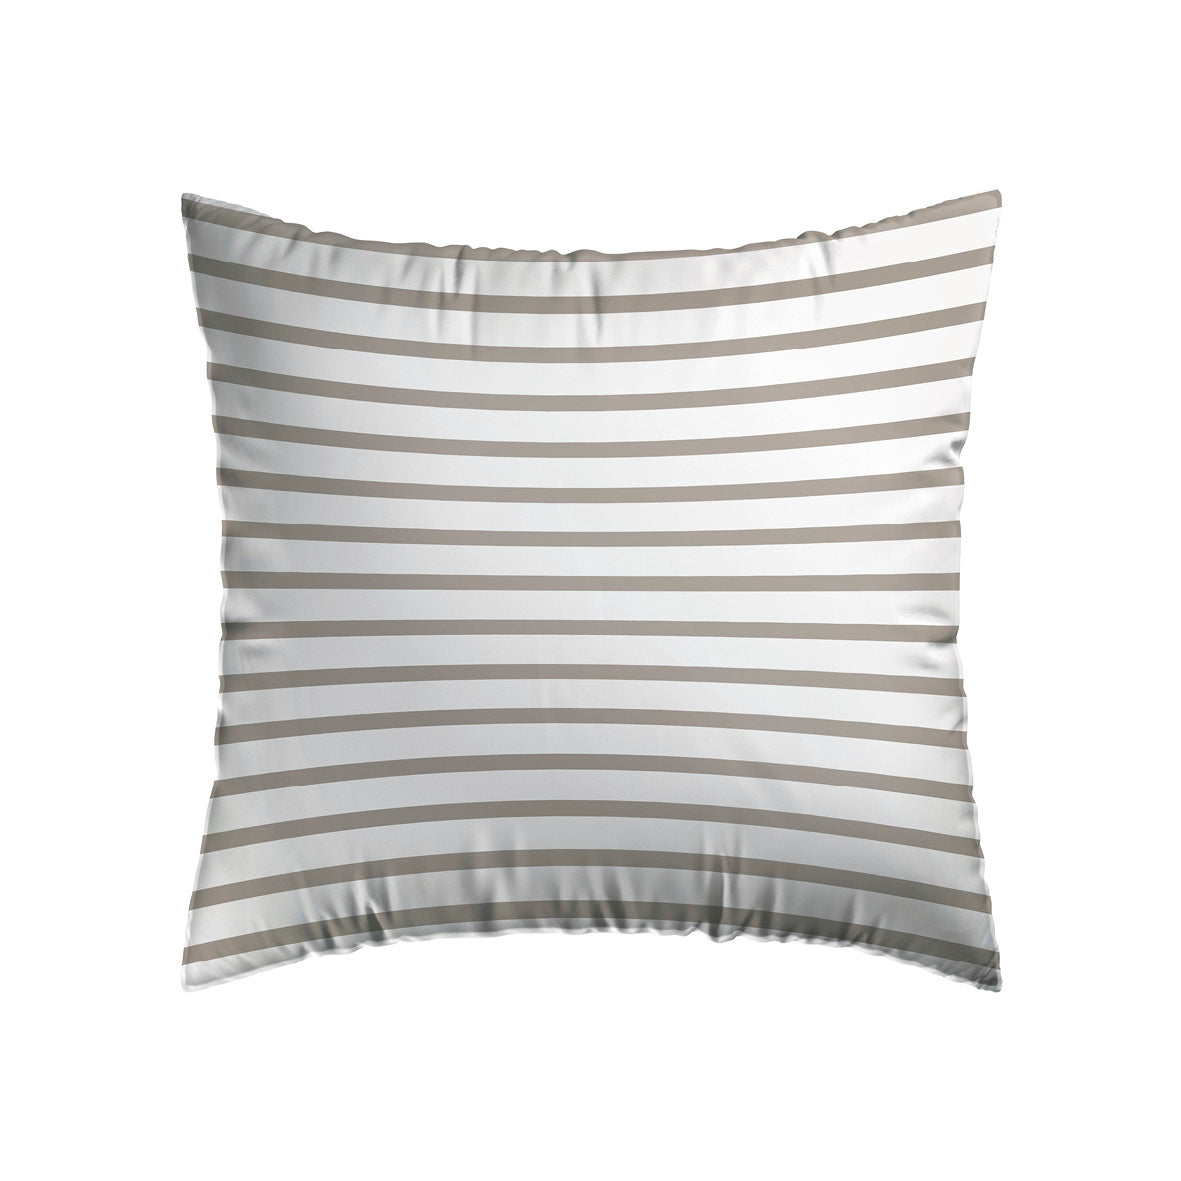 Pillowcase(s) cotton satin - Horizon Taupe 2 x (63 x 63 cm)